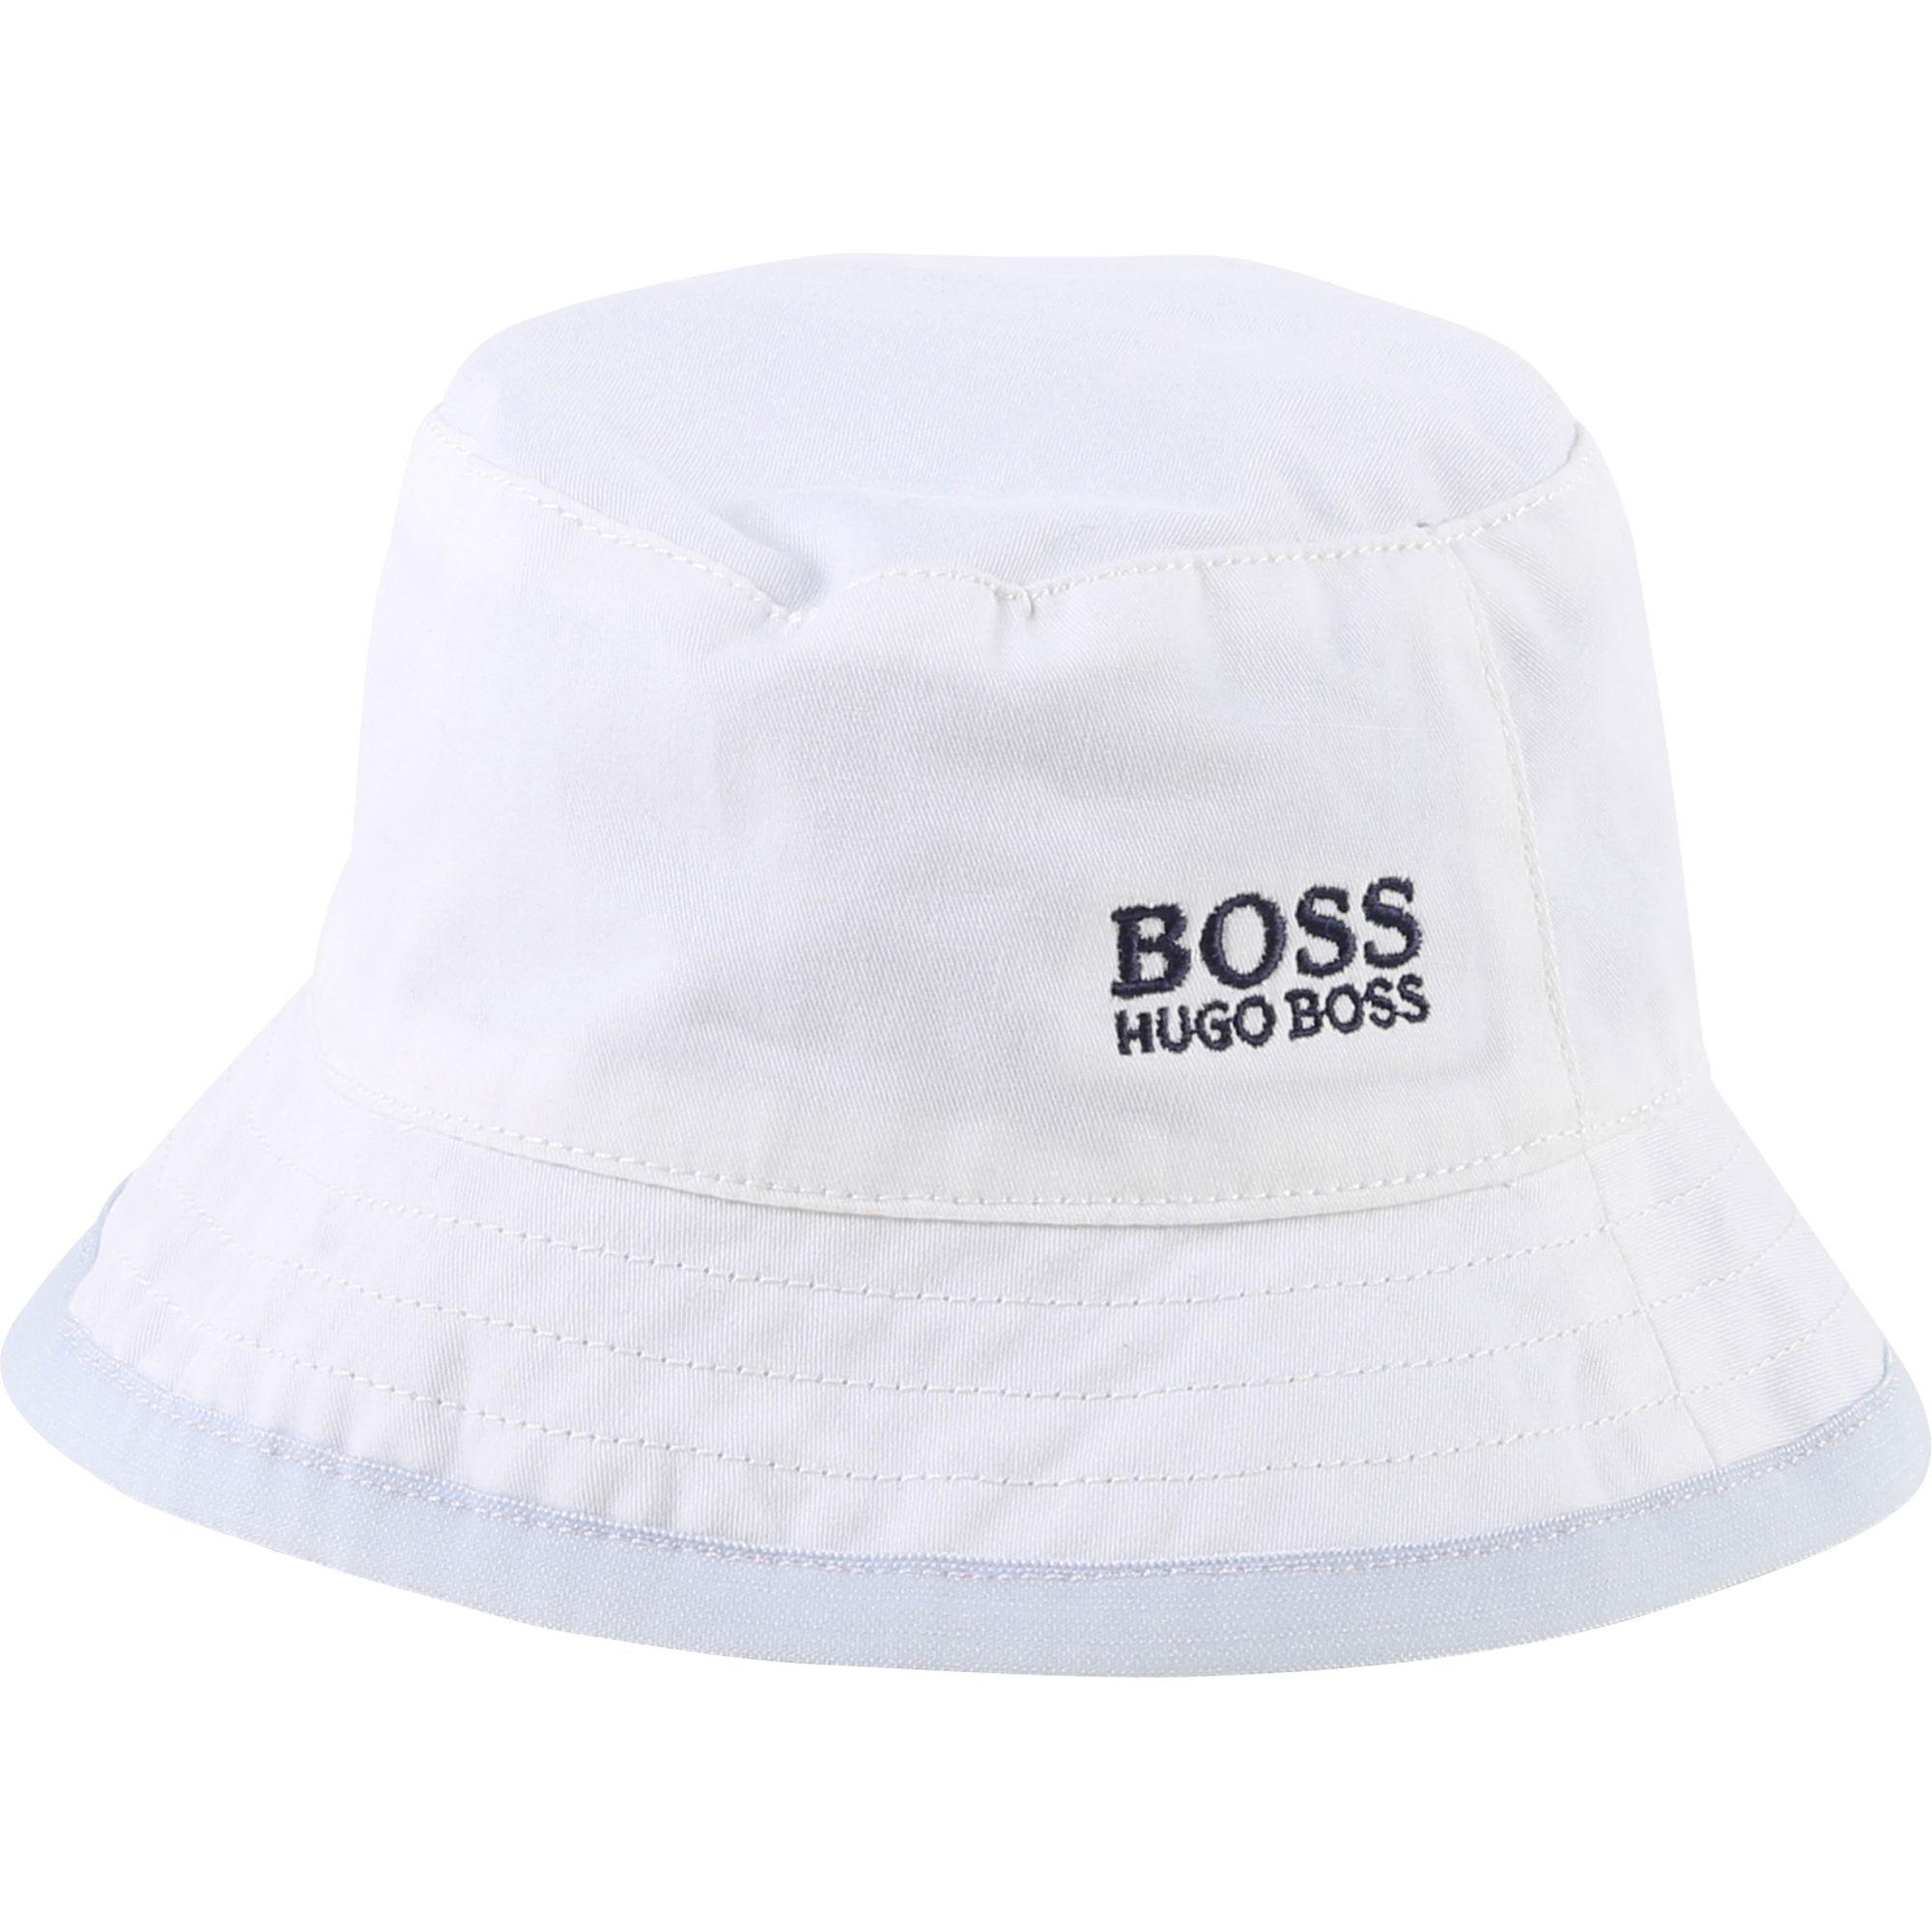 hugo boss bucket hat mens